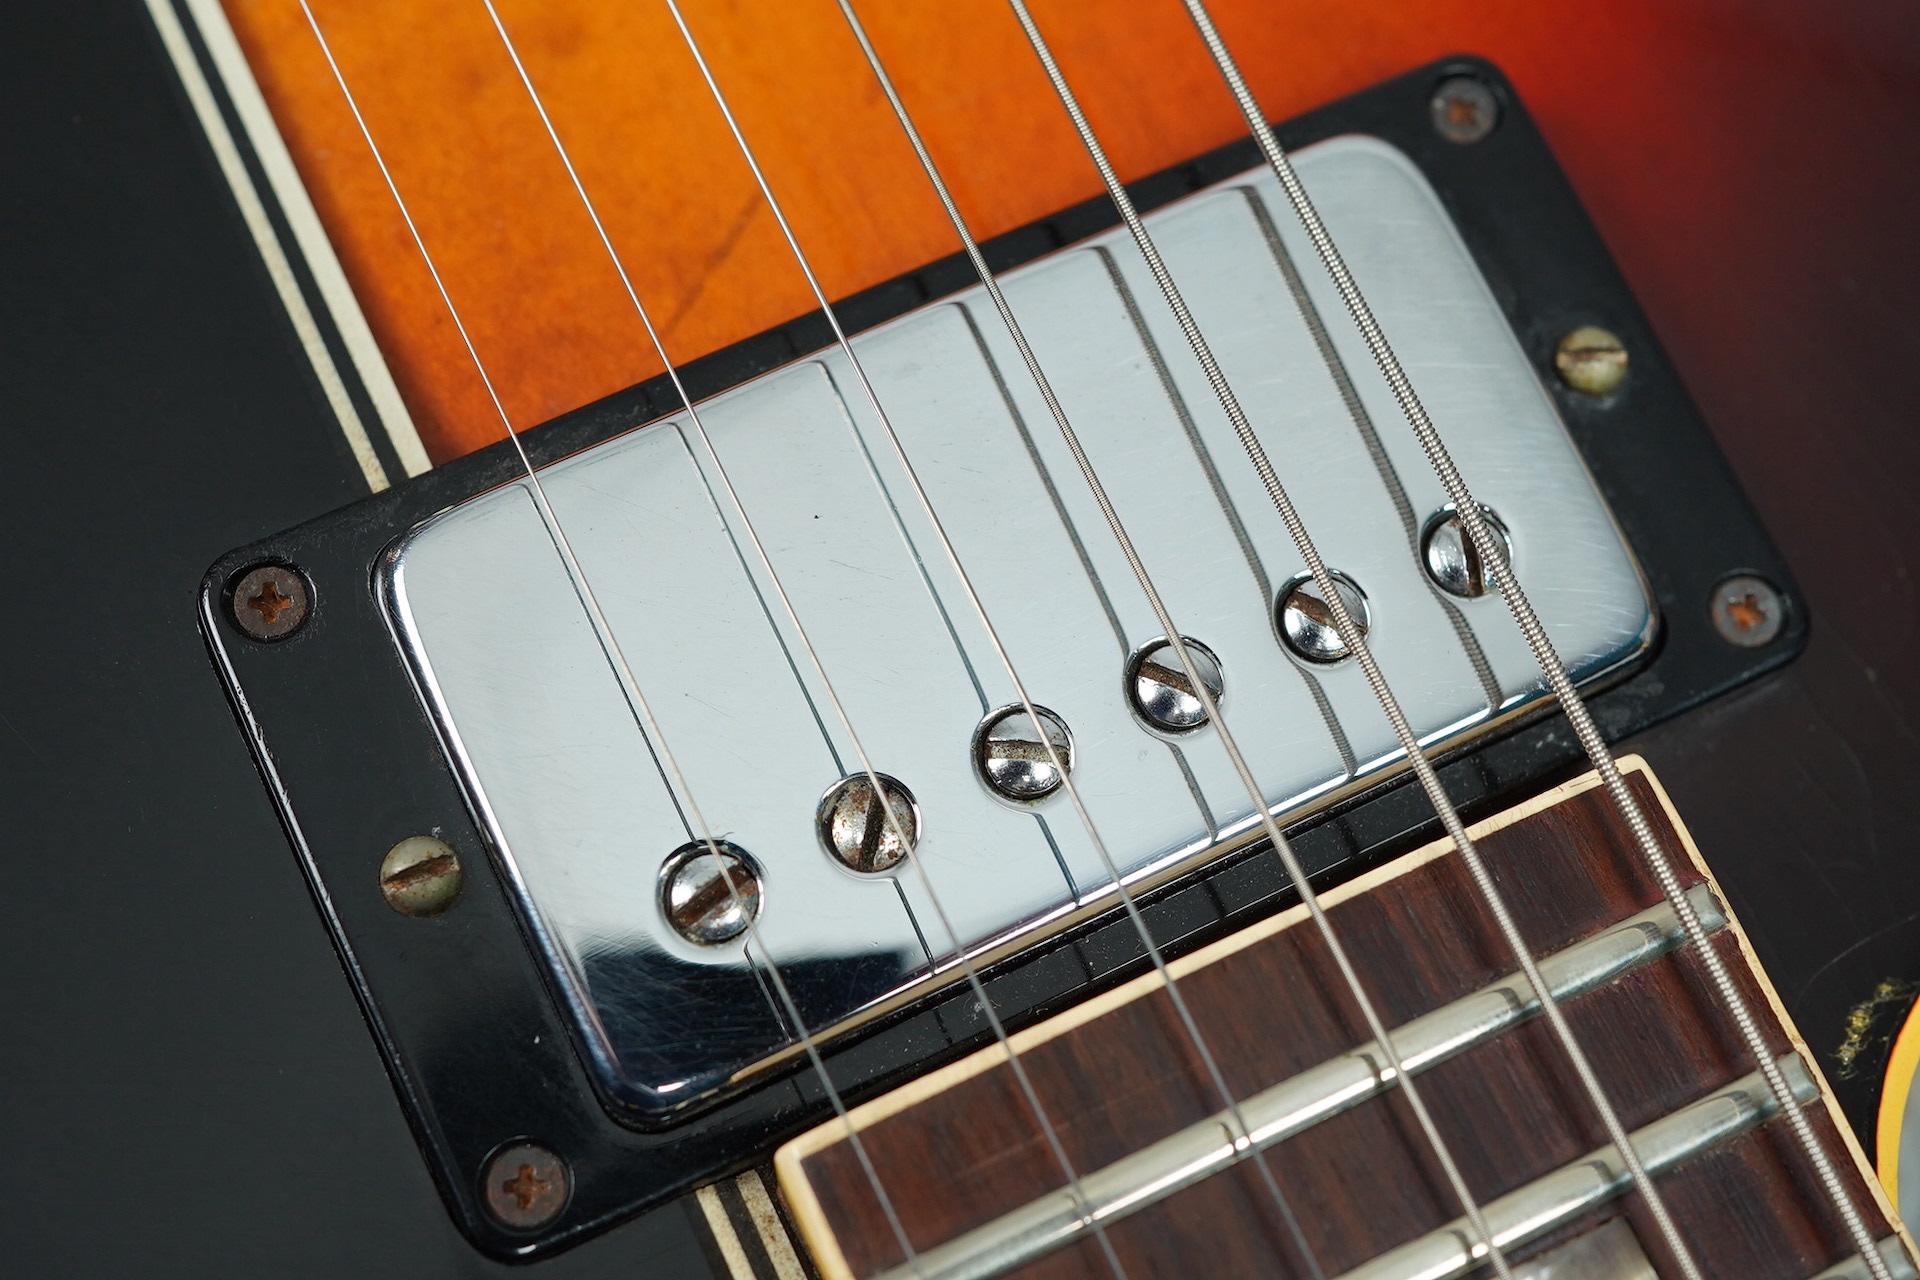 1968 Gibson ES-335 TD